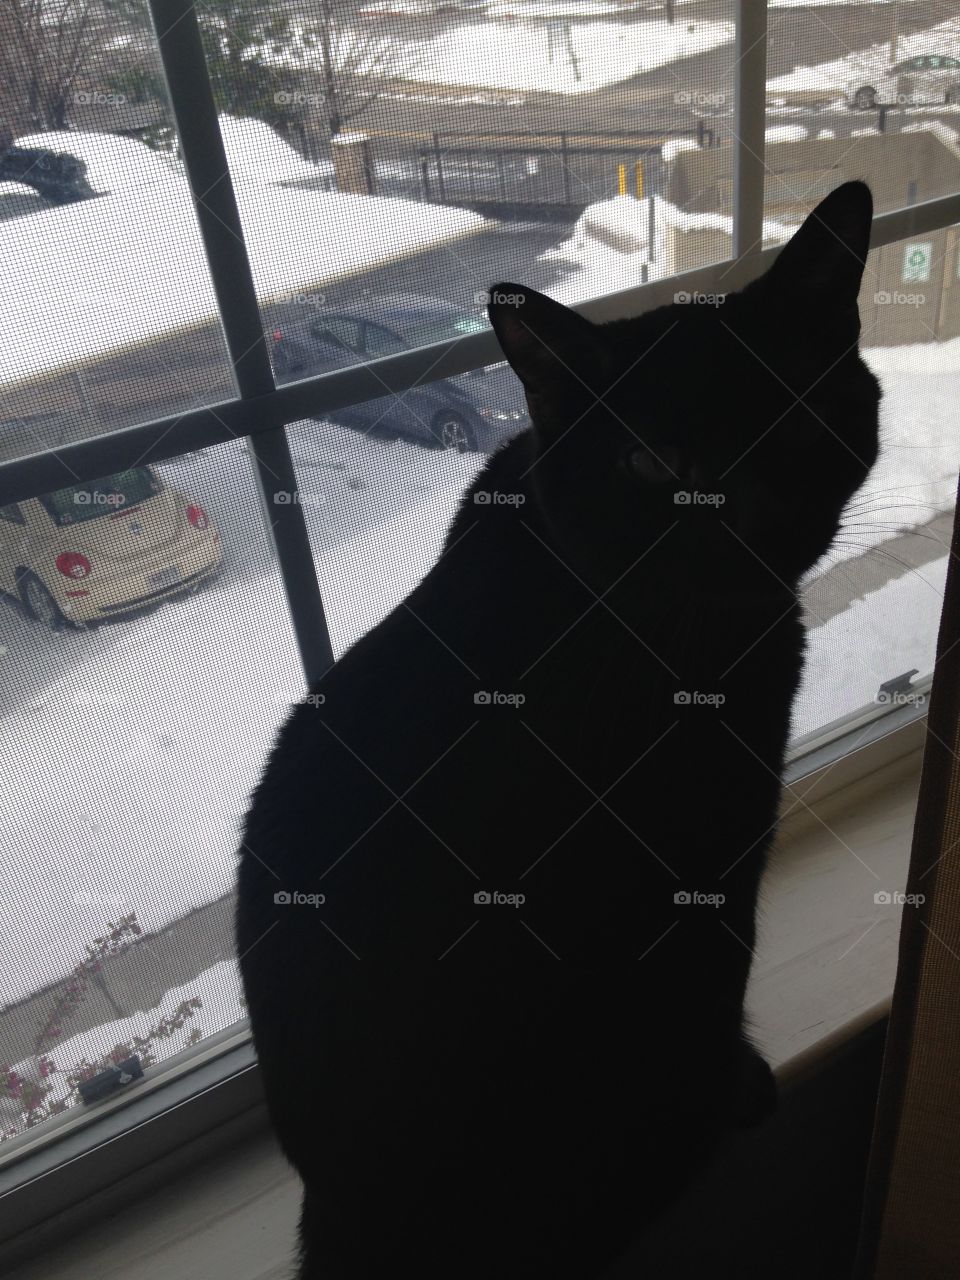 Black cat in window